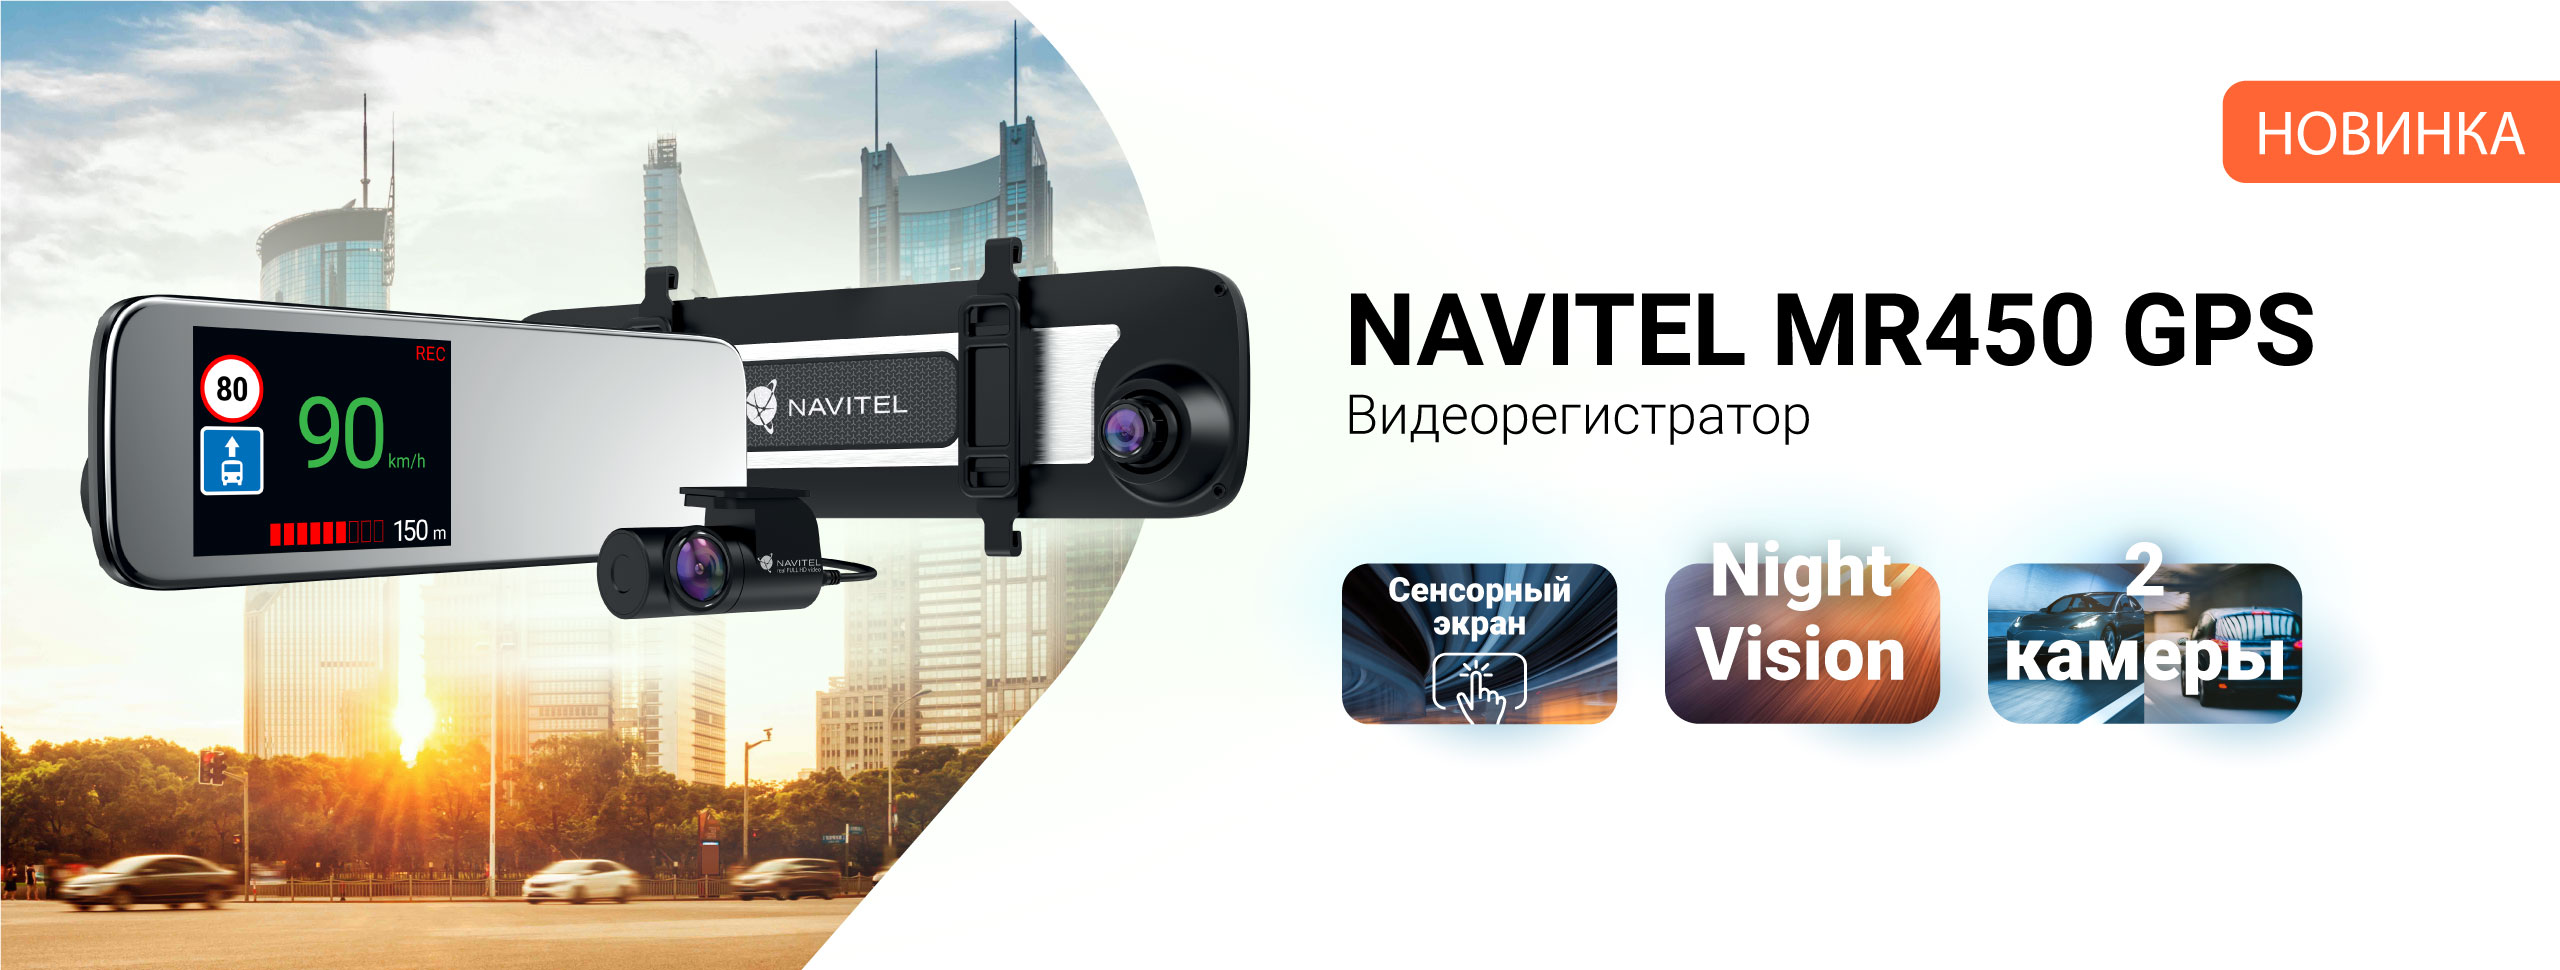 NAVITEL MR450 GPS с двумя камерами, GPS и сенсорным управлением